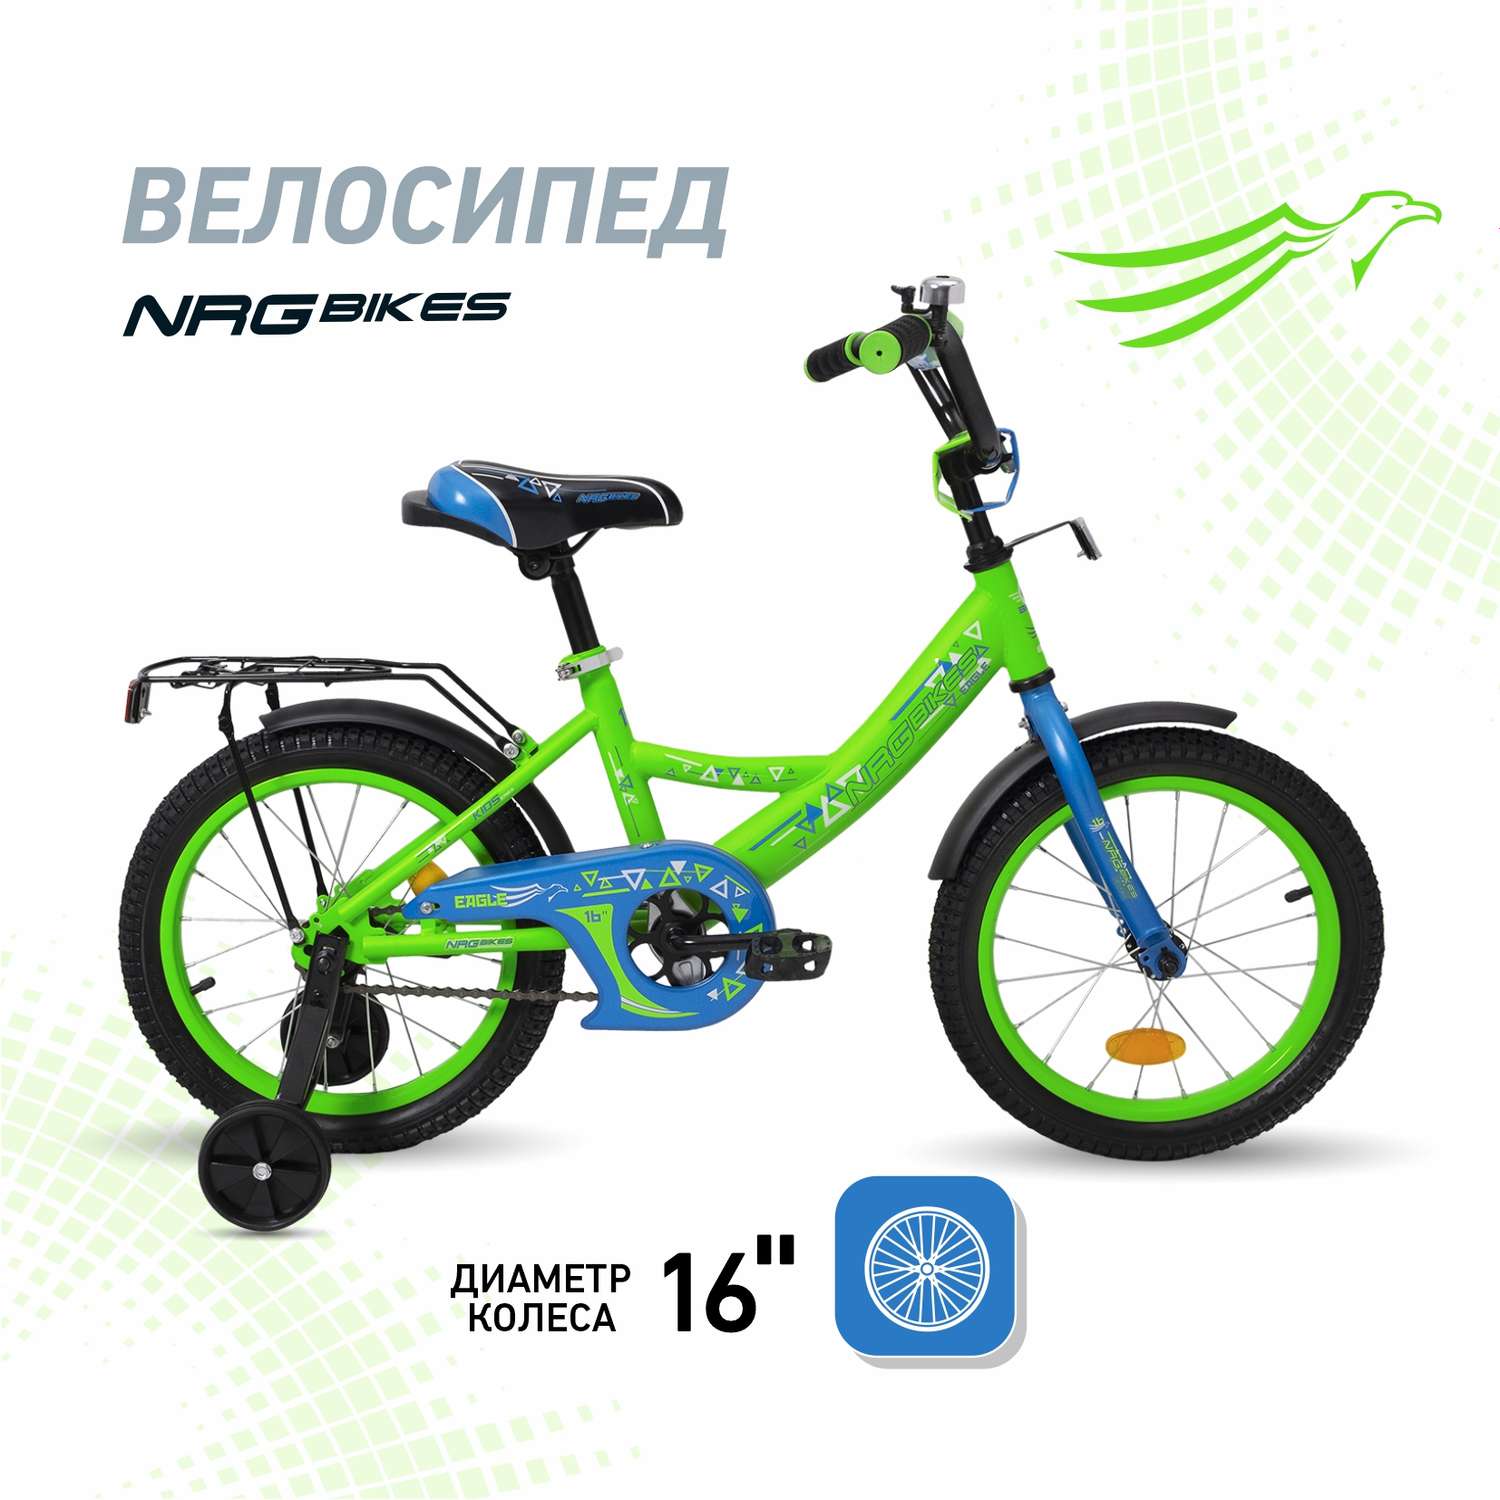 Велосипед NRG BIKES EAGLE 16 green-blue - фото 1